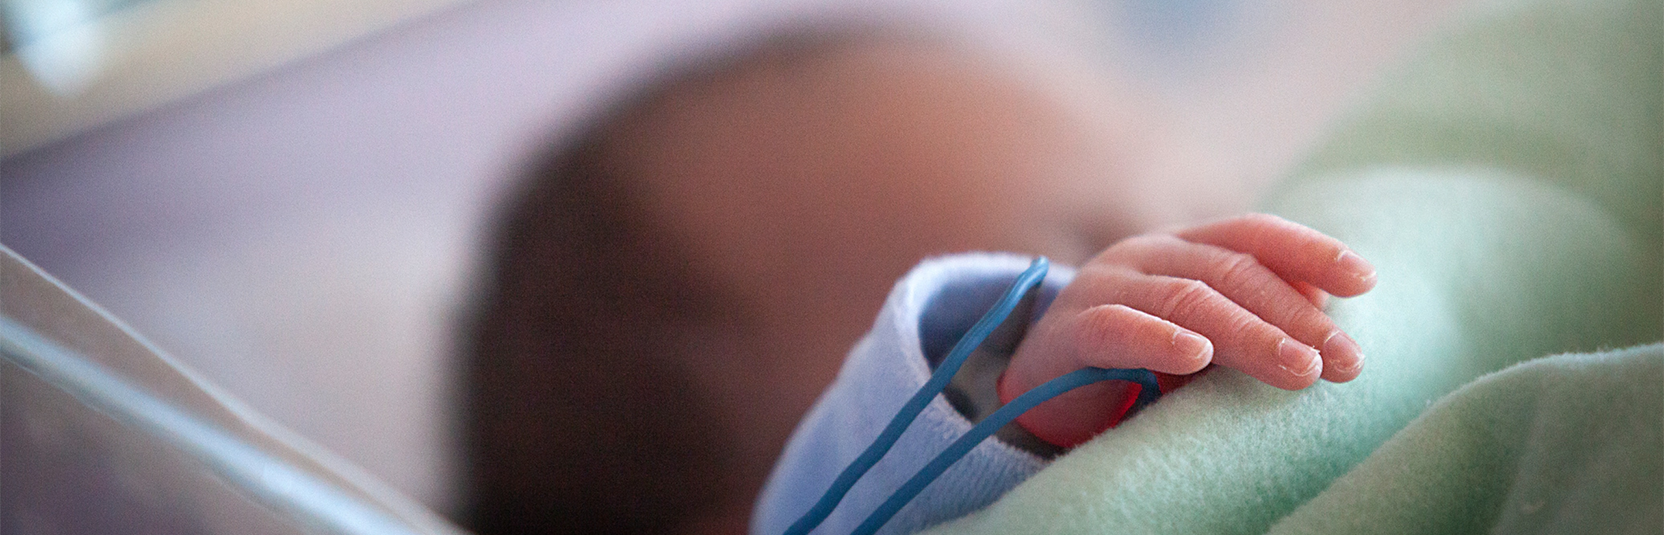 Autismo: in Regione Lombardia monitorati i neonati prematuri e i fratellini